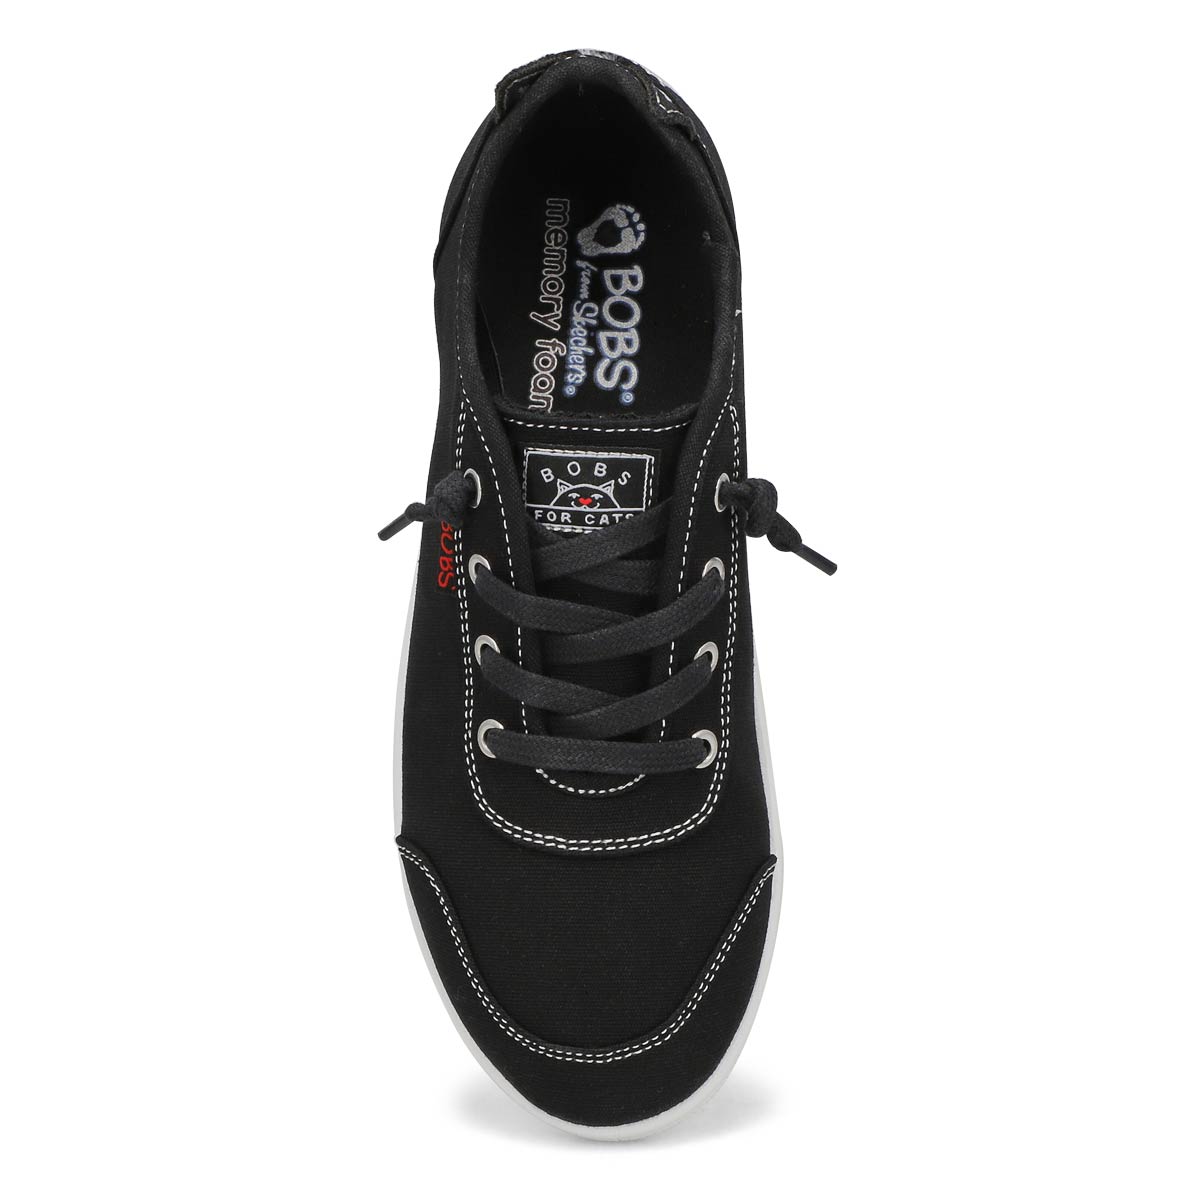 Women's Bobs B Cute Heel Strut Sneaker - Black